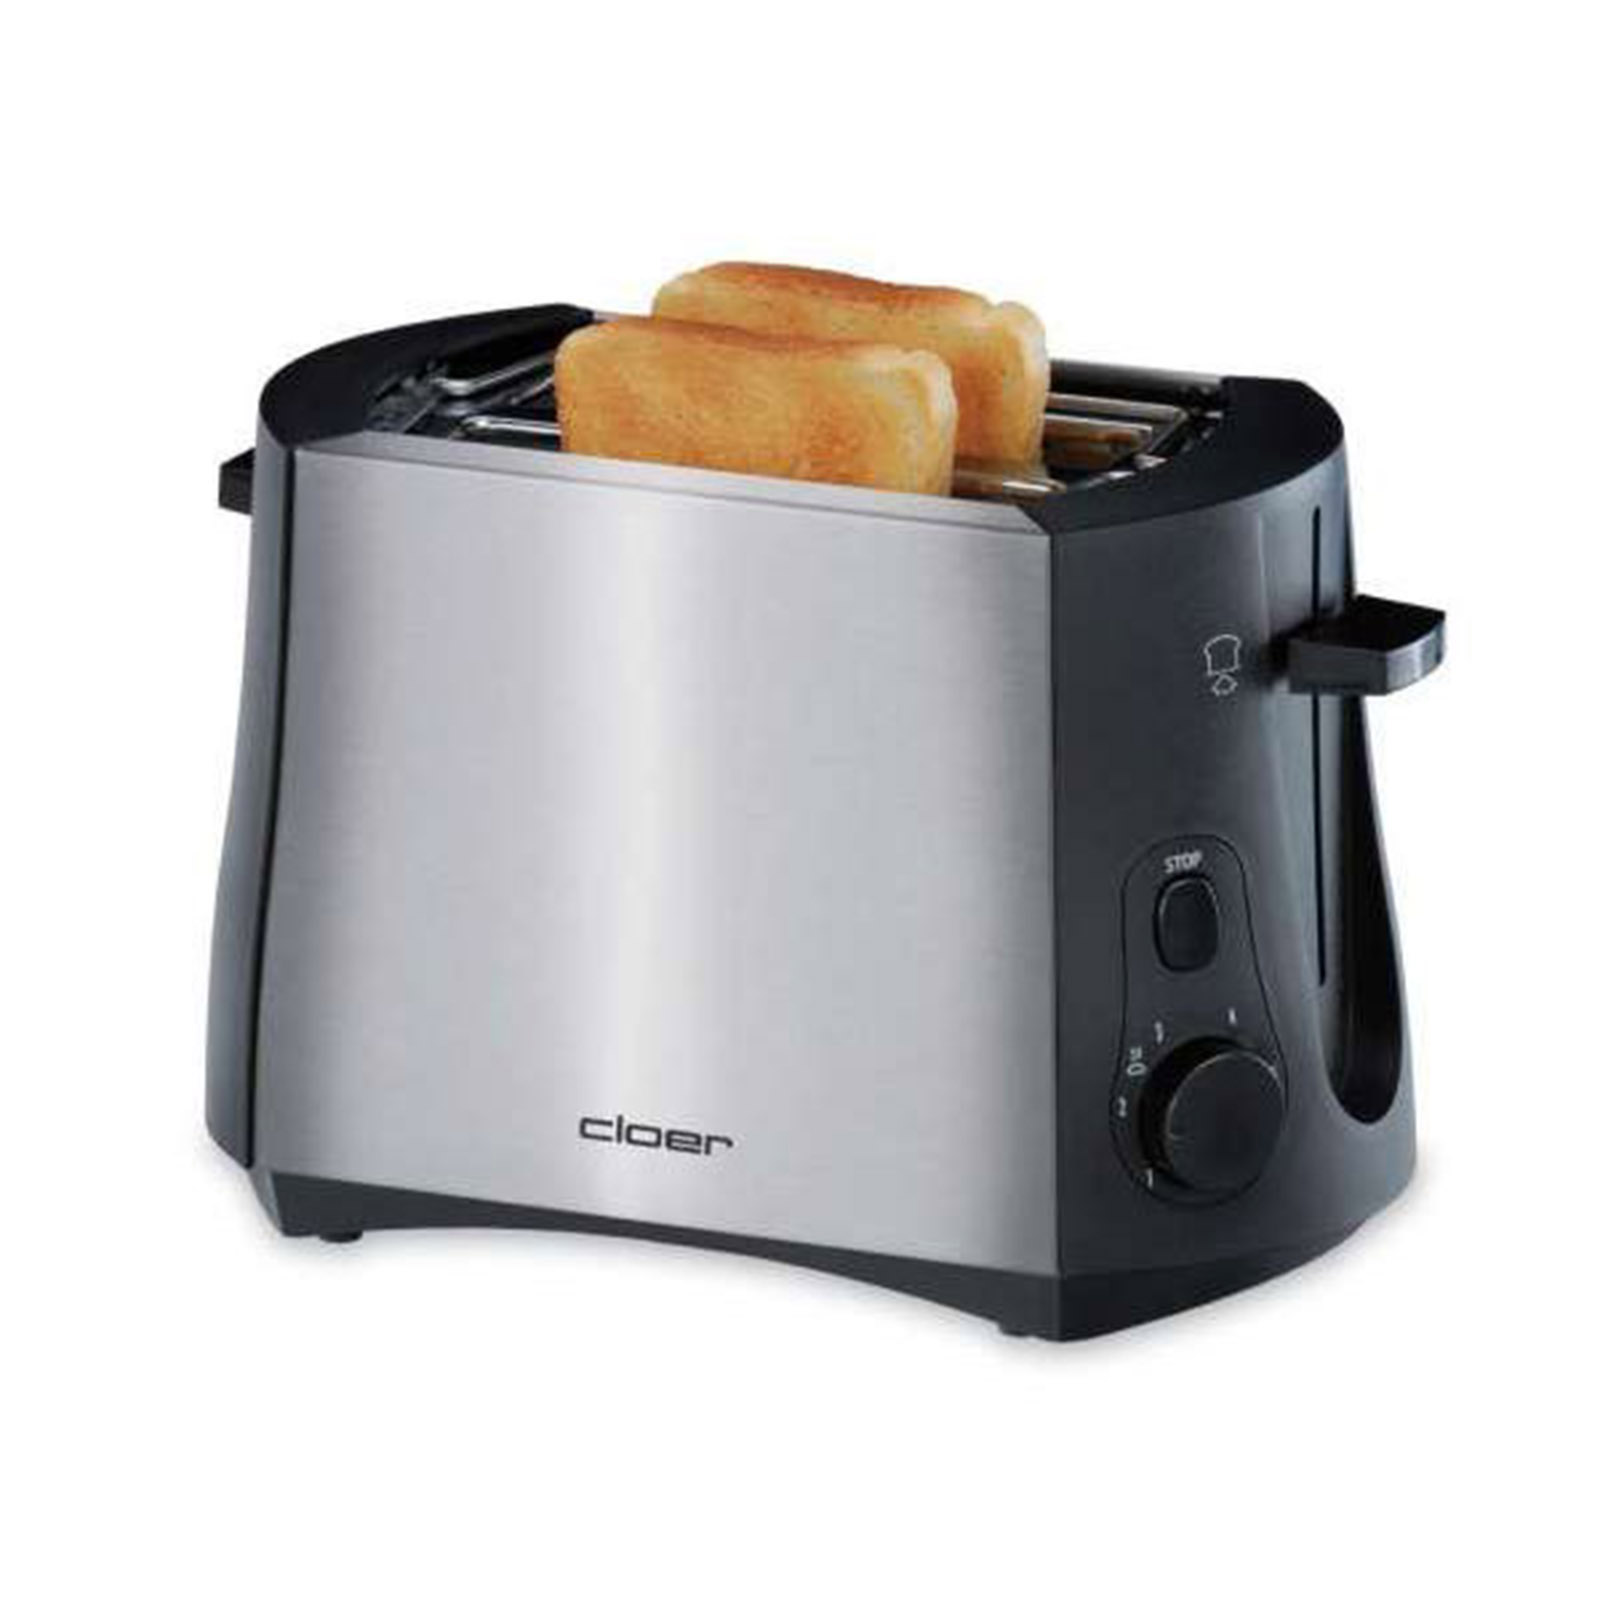 Cloer 3419 Toaster Toastautomat 2 Scheiben 900 Watt